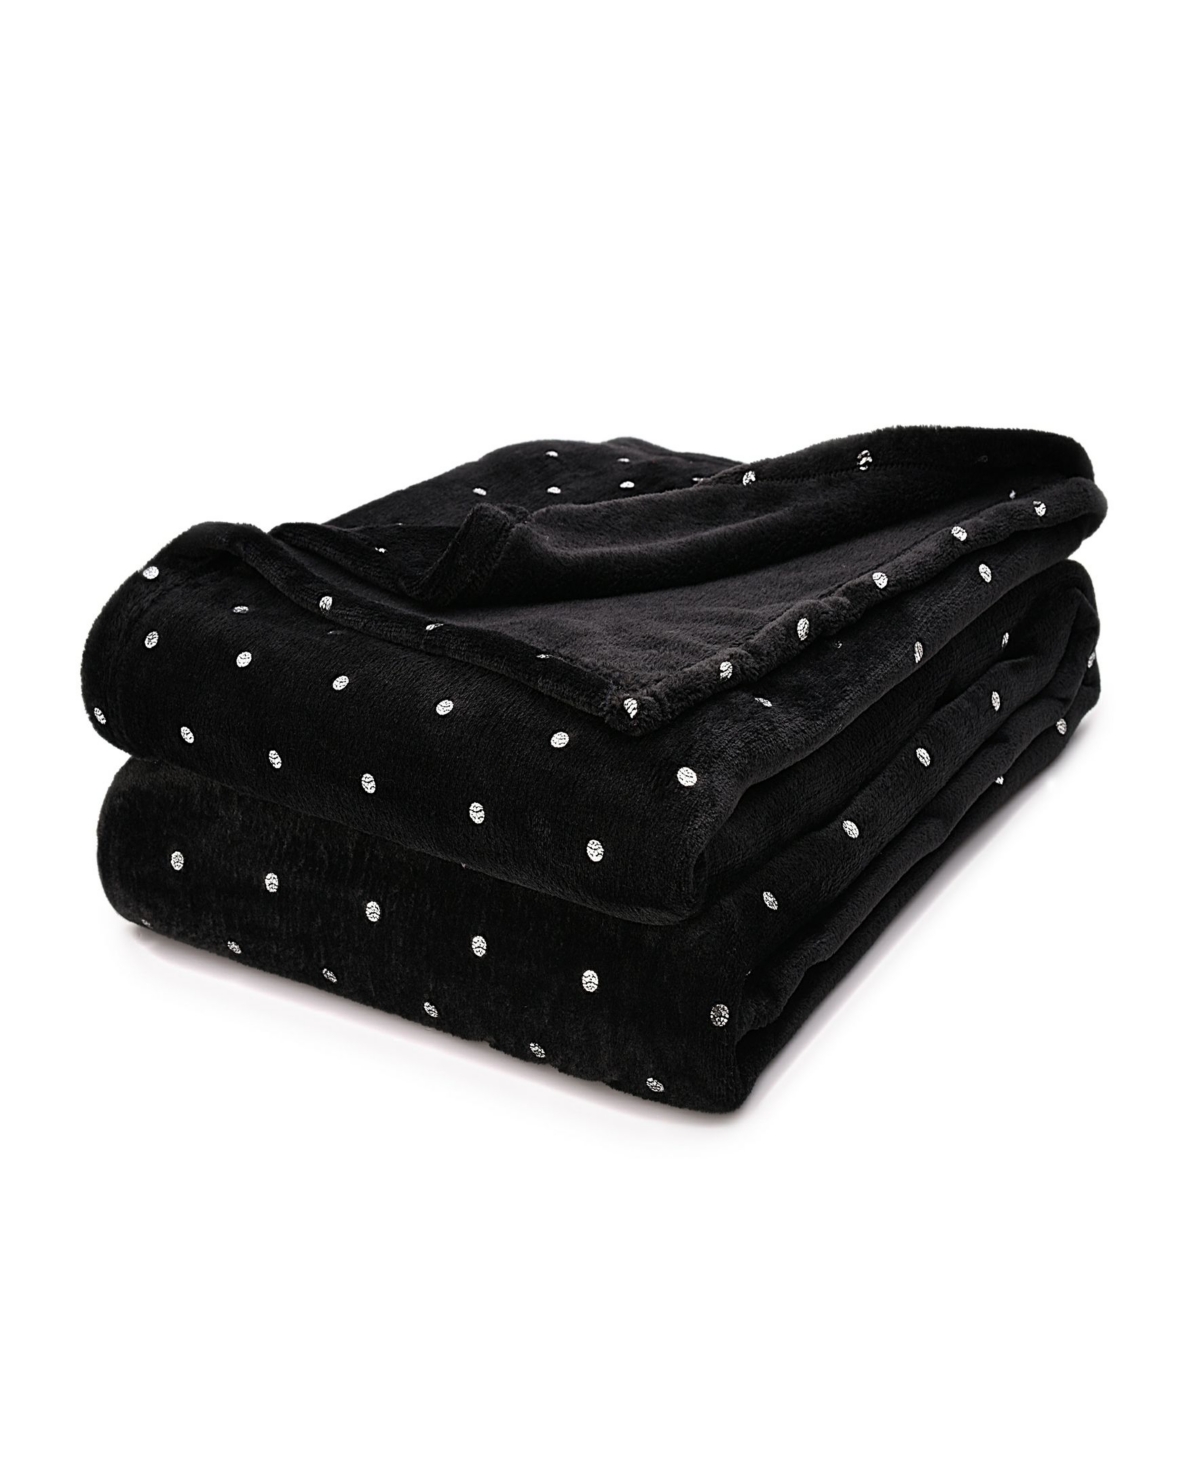 Superior Ultra -plush Polka Dot Fleece Blanket, King In Black